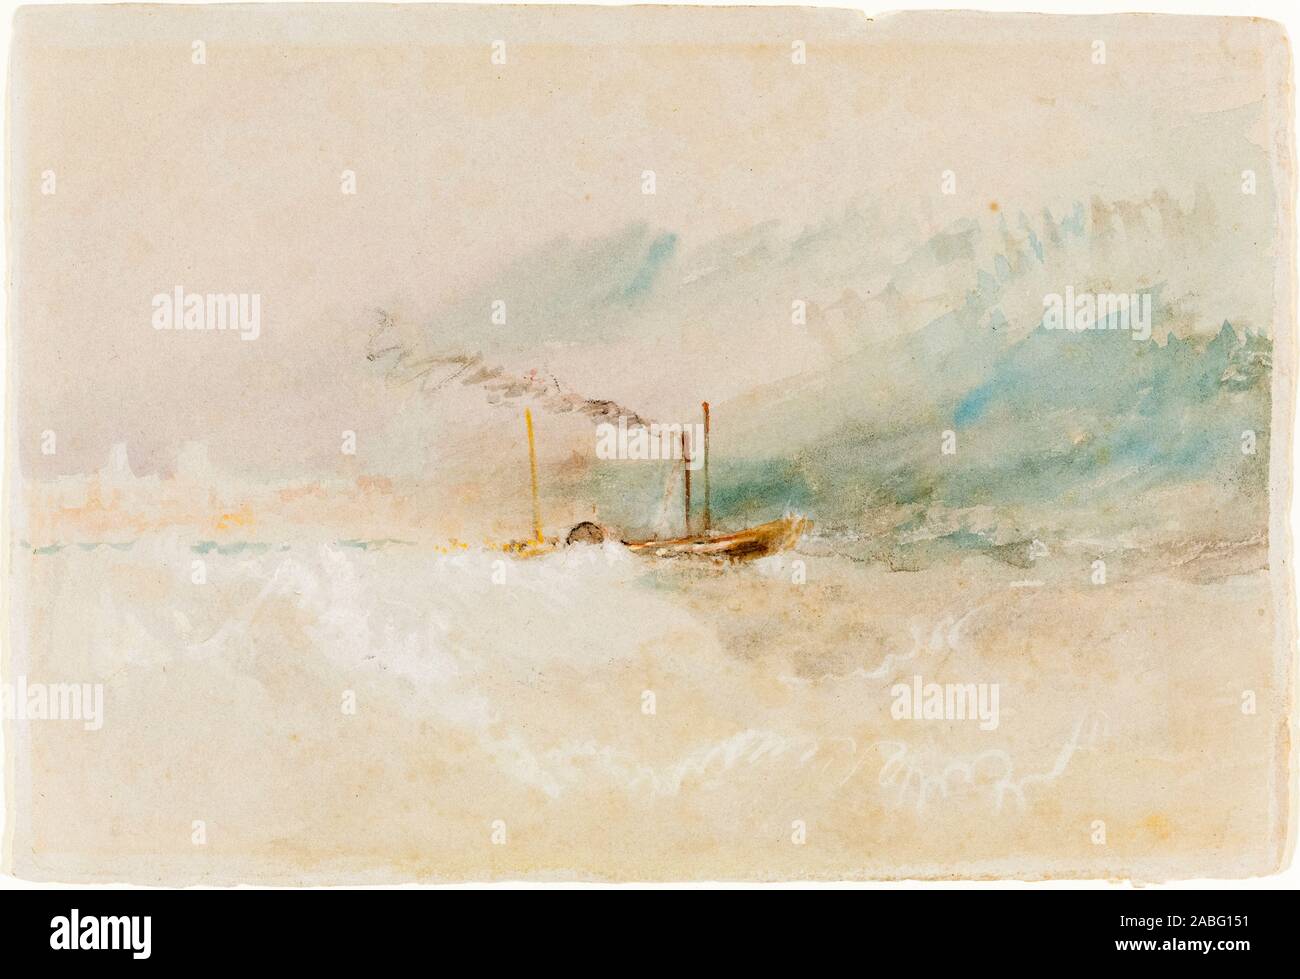 JMW Turner, un paquet voile au large de Douvres, la peinture de paysage, vers 1836 Banque D'Images